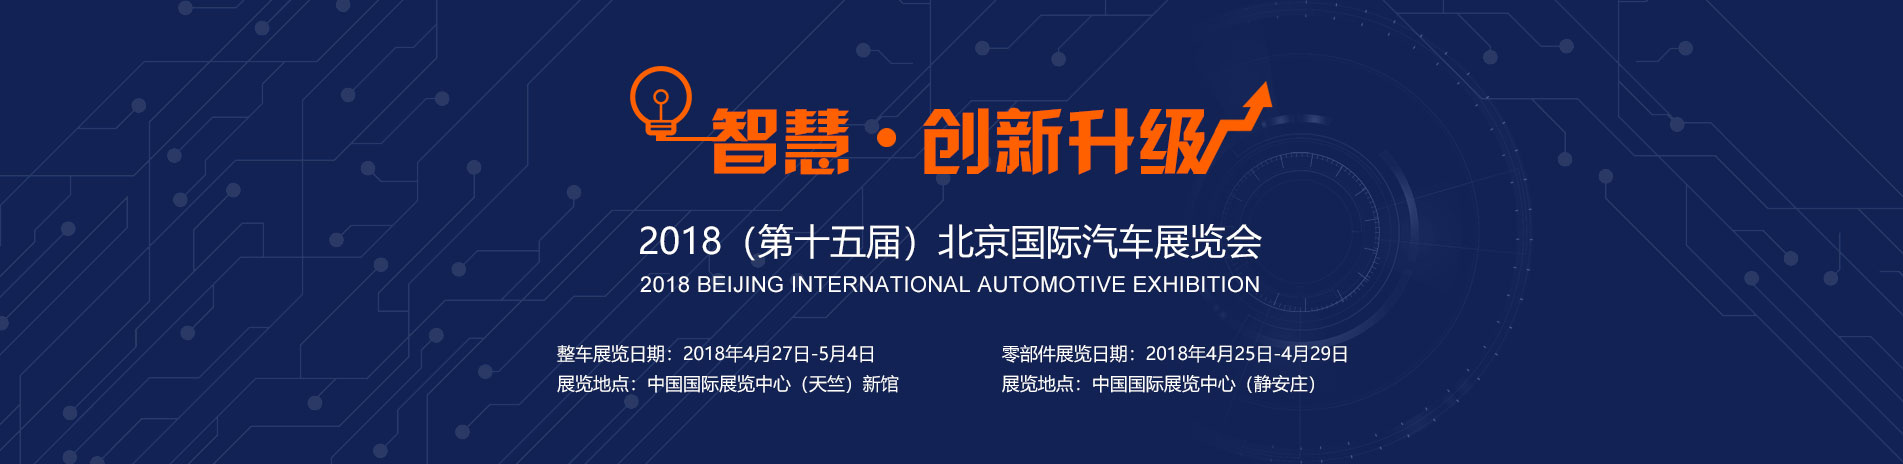 上汽红岩展台 智慧 · 创新升级 2018北京国际汽车展览会